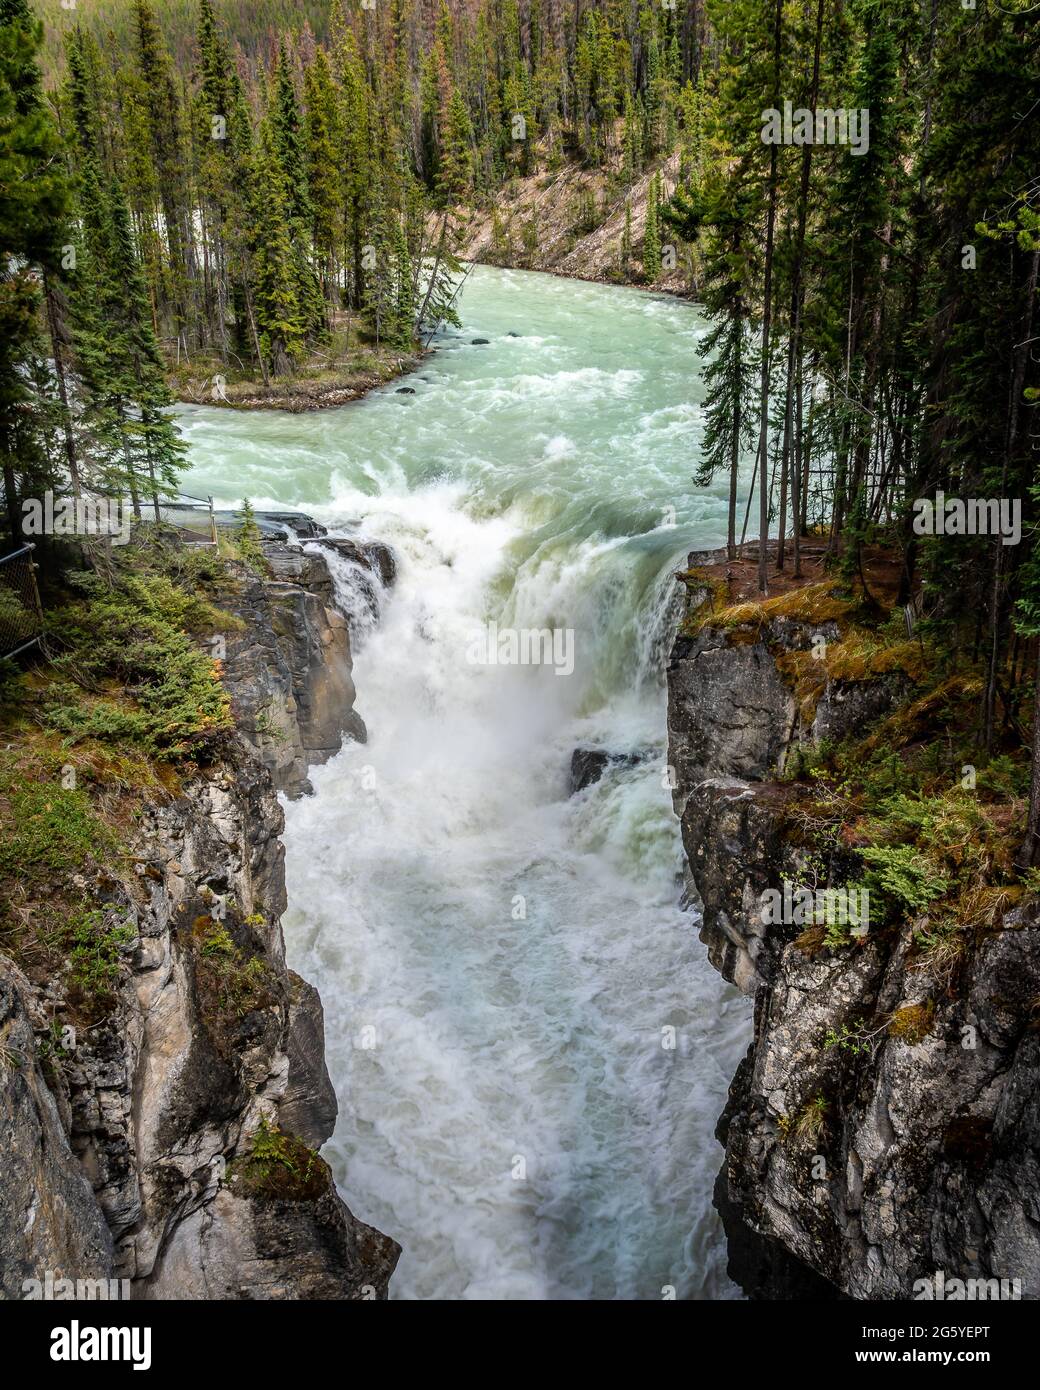 La turbulente de l'eau turquoise de la rivière Sunwapta comme il dégringole Sunwapta Falls dans le parc national Jasper dans les Rocheuses canadiennes Banque D'Images